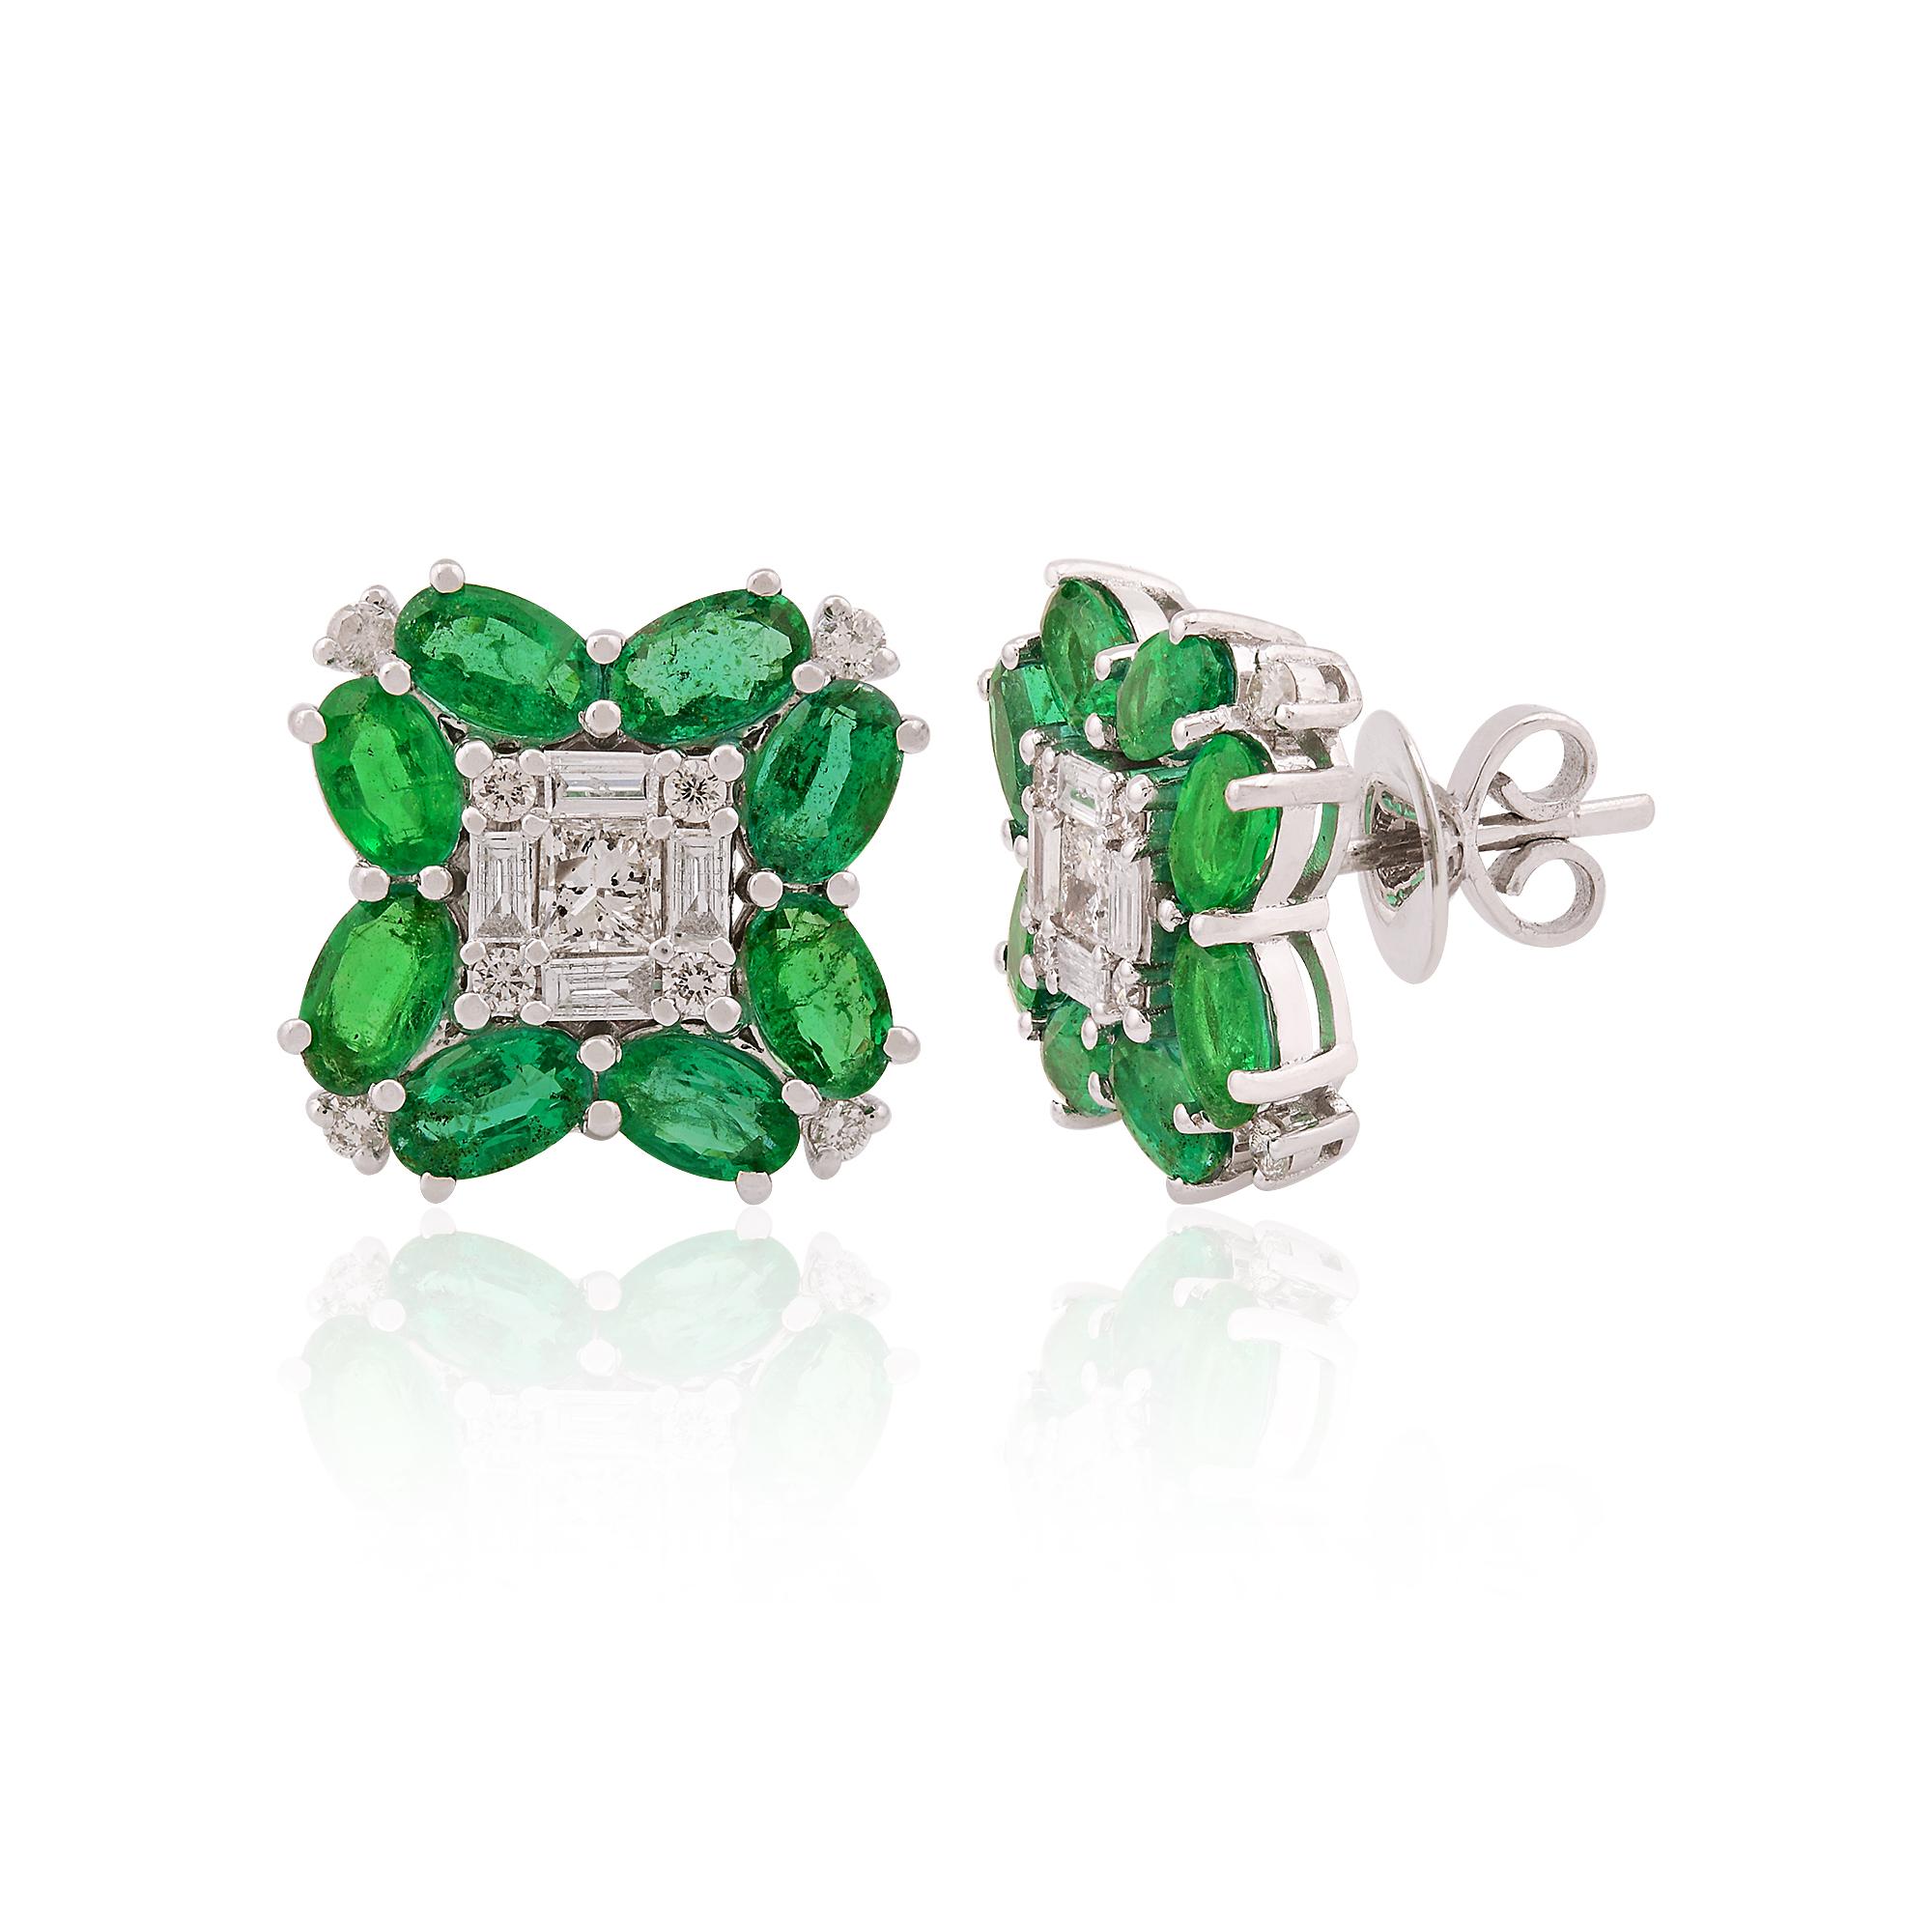 Oval Cut Oval Zambian Emerald Gemstone Stud Earrings Baguette Diamond 18 Karat White Gold For Sale